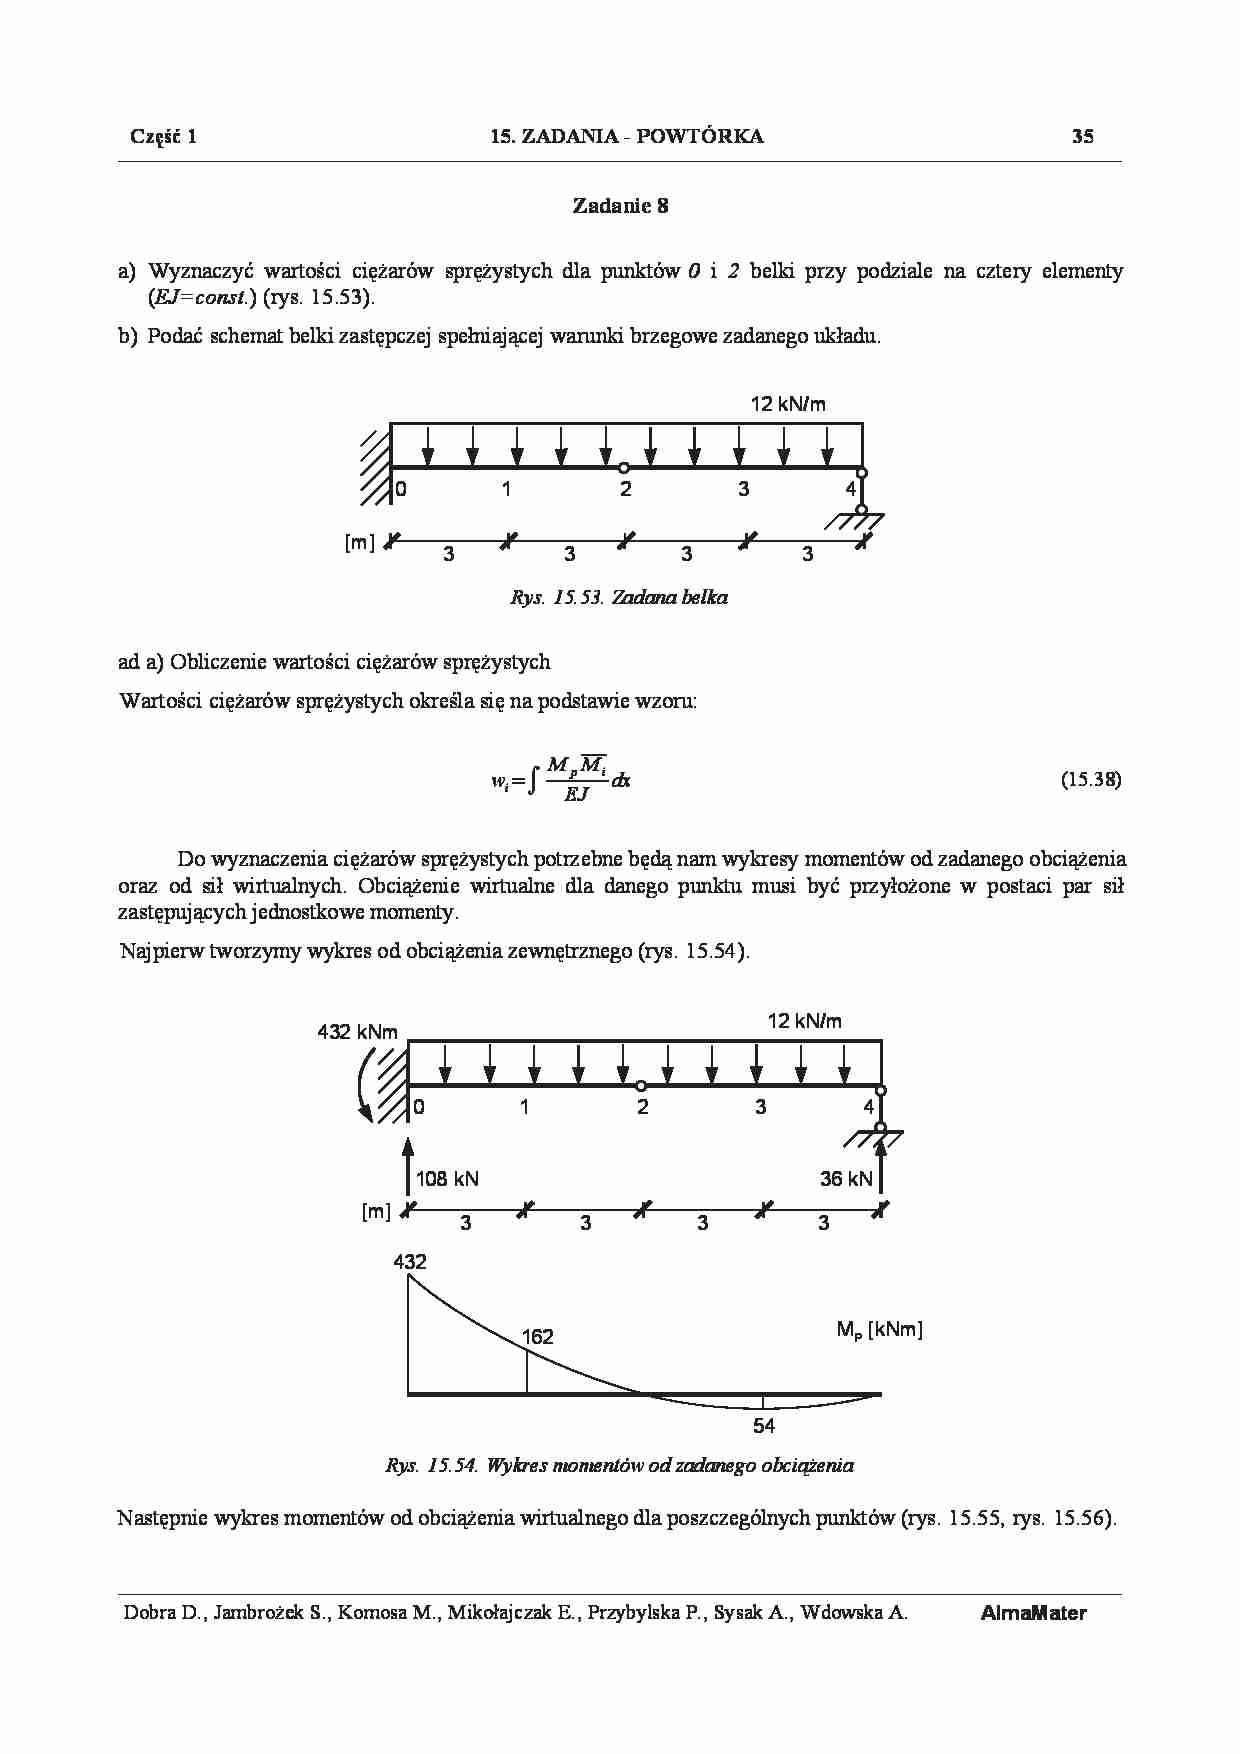 Mechanika konstrukcji 1 - Zadania Powtórka - Przykład 8 - strona 1